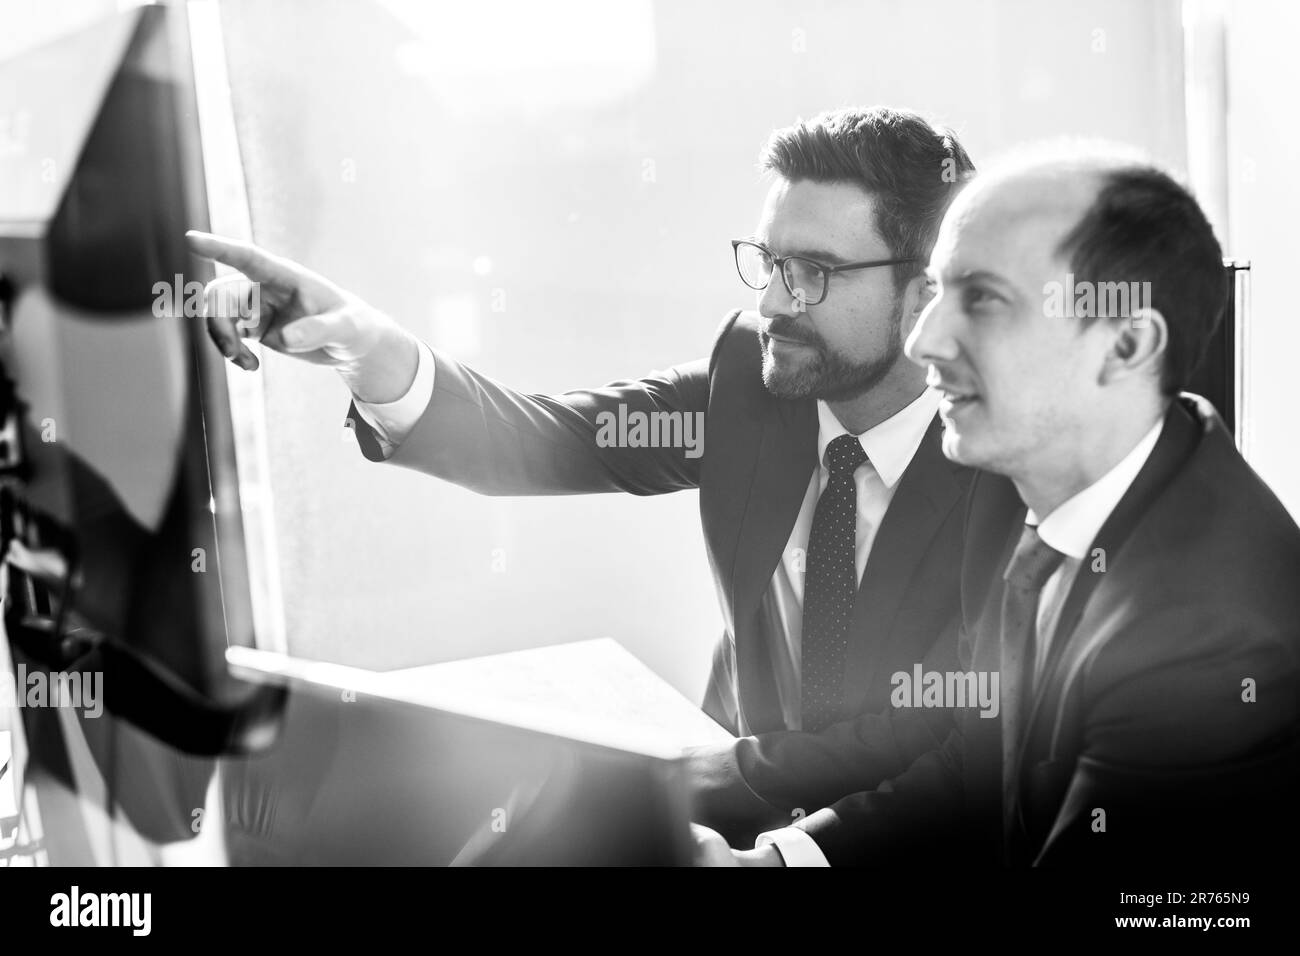 Image de deux hommes d'affaires réfléchis qui regardent des données sur plusieurs écrans d'ordinateur et résolvent des problèmes d'affaires lors de réunions d'affaires dans un bureau d'entreprise moderne.Concept de réussite commerciale. Banque D'Images